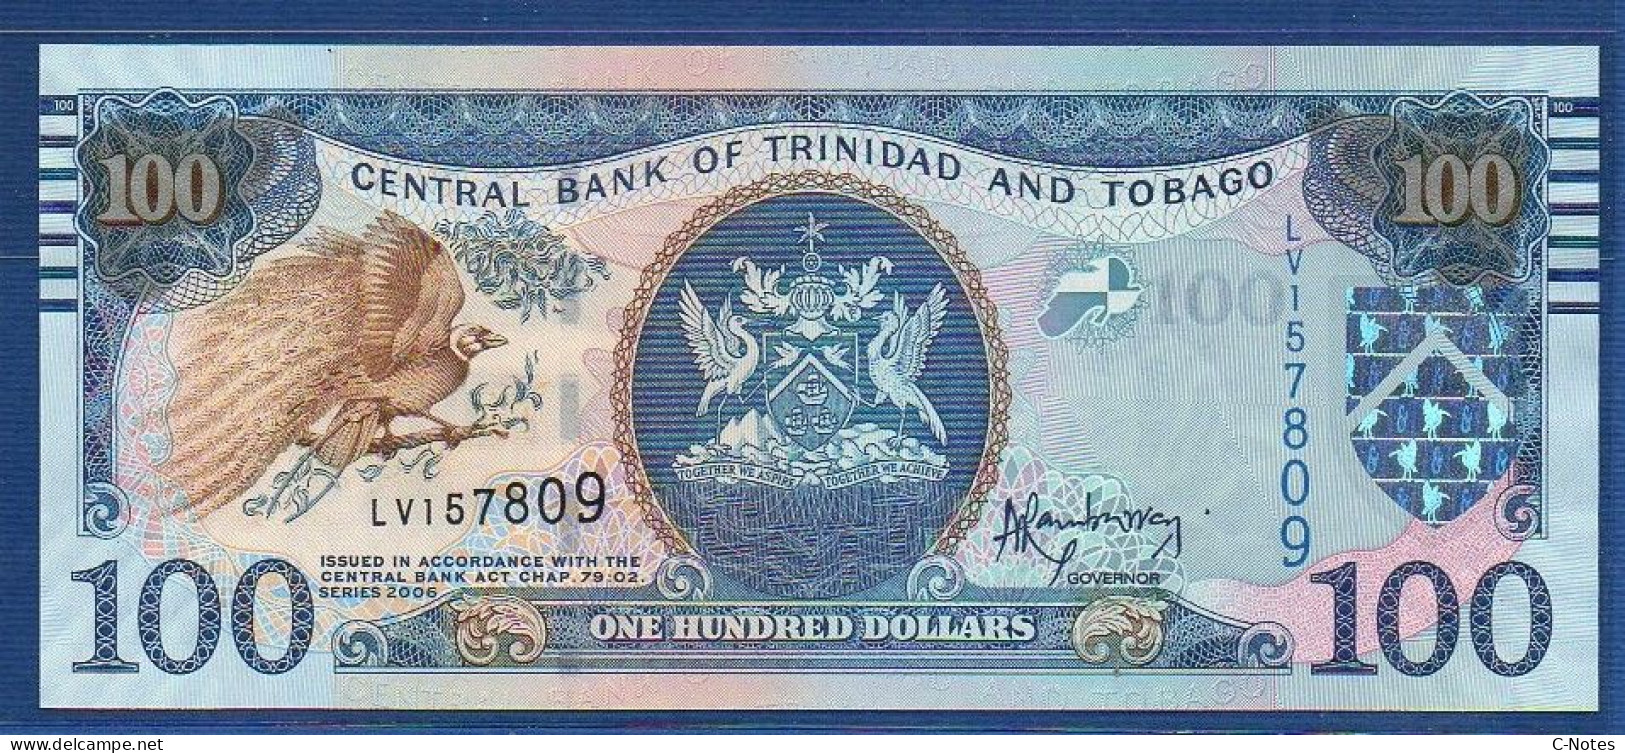 TRINIDAD & TOBAGO - P.51b – 100 Dollars 2006 UNC, S/n LV157809 - Trinidad & Tobago